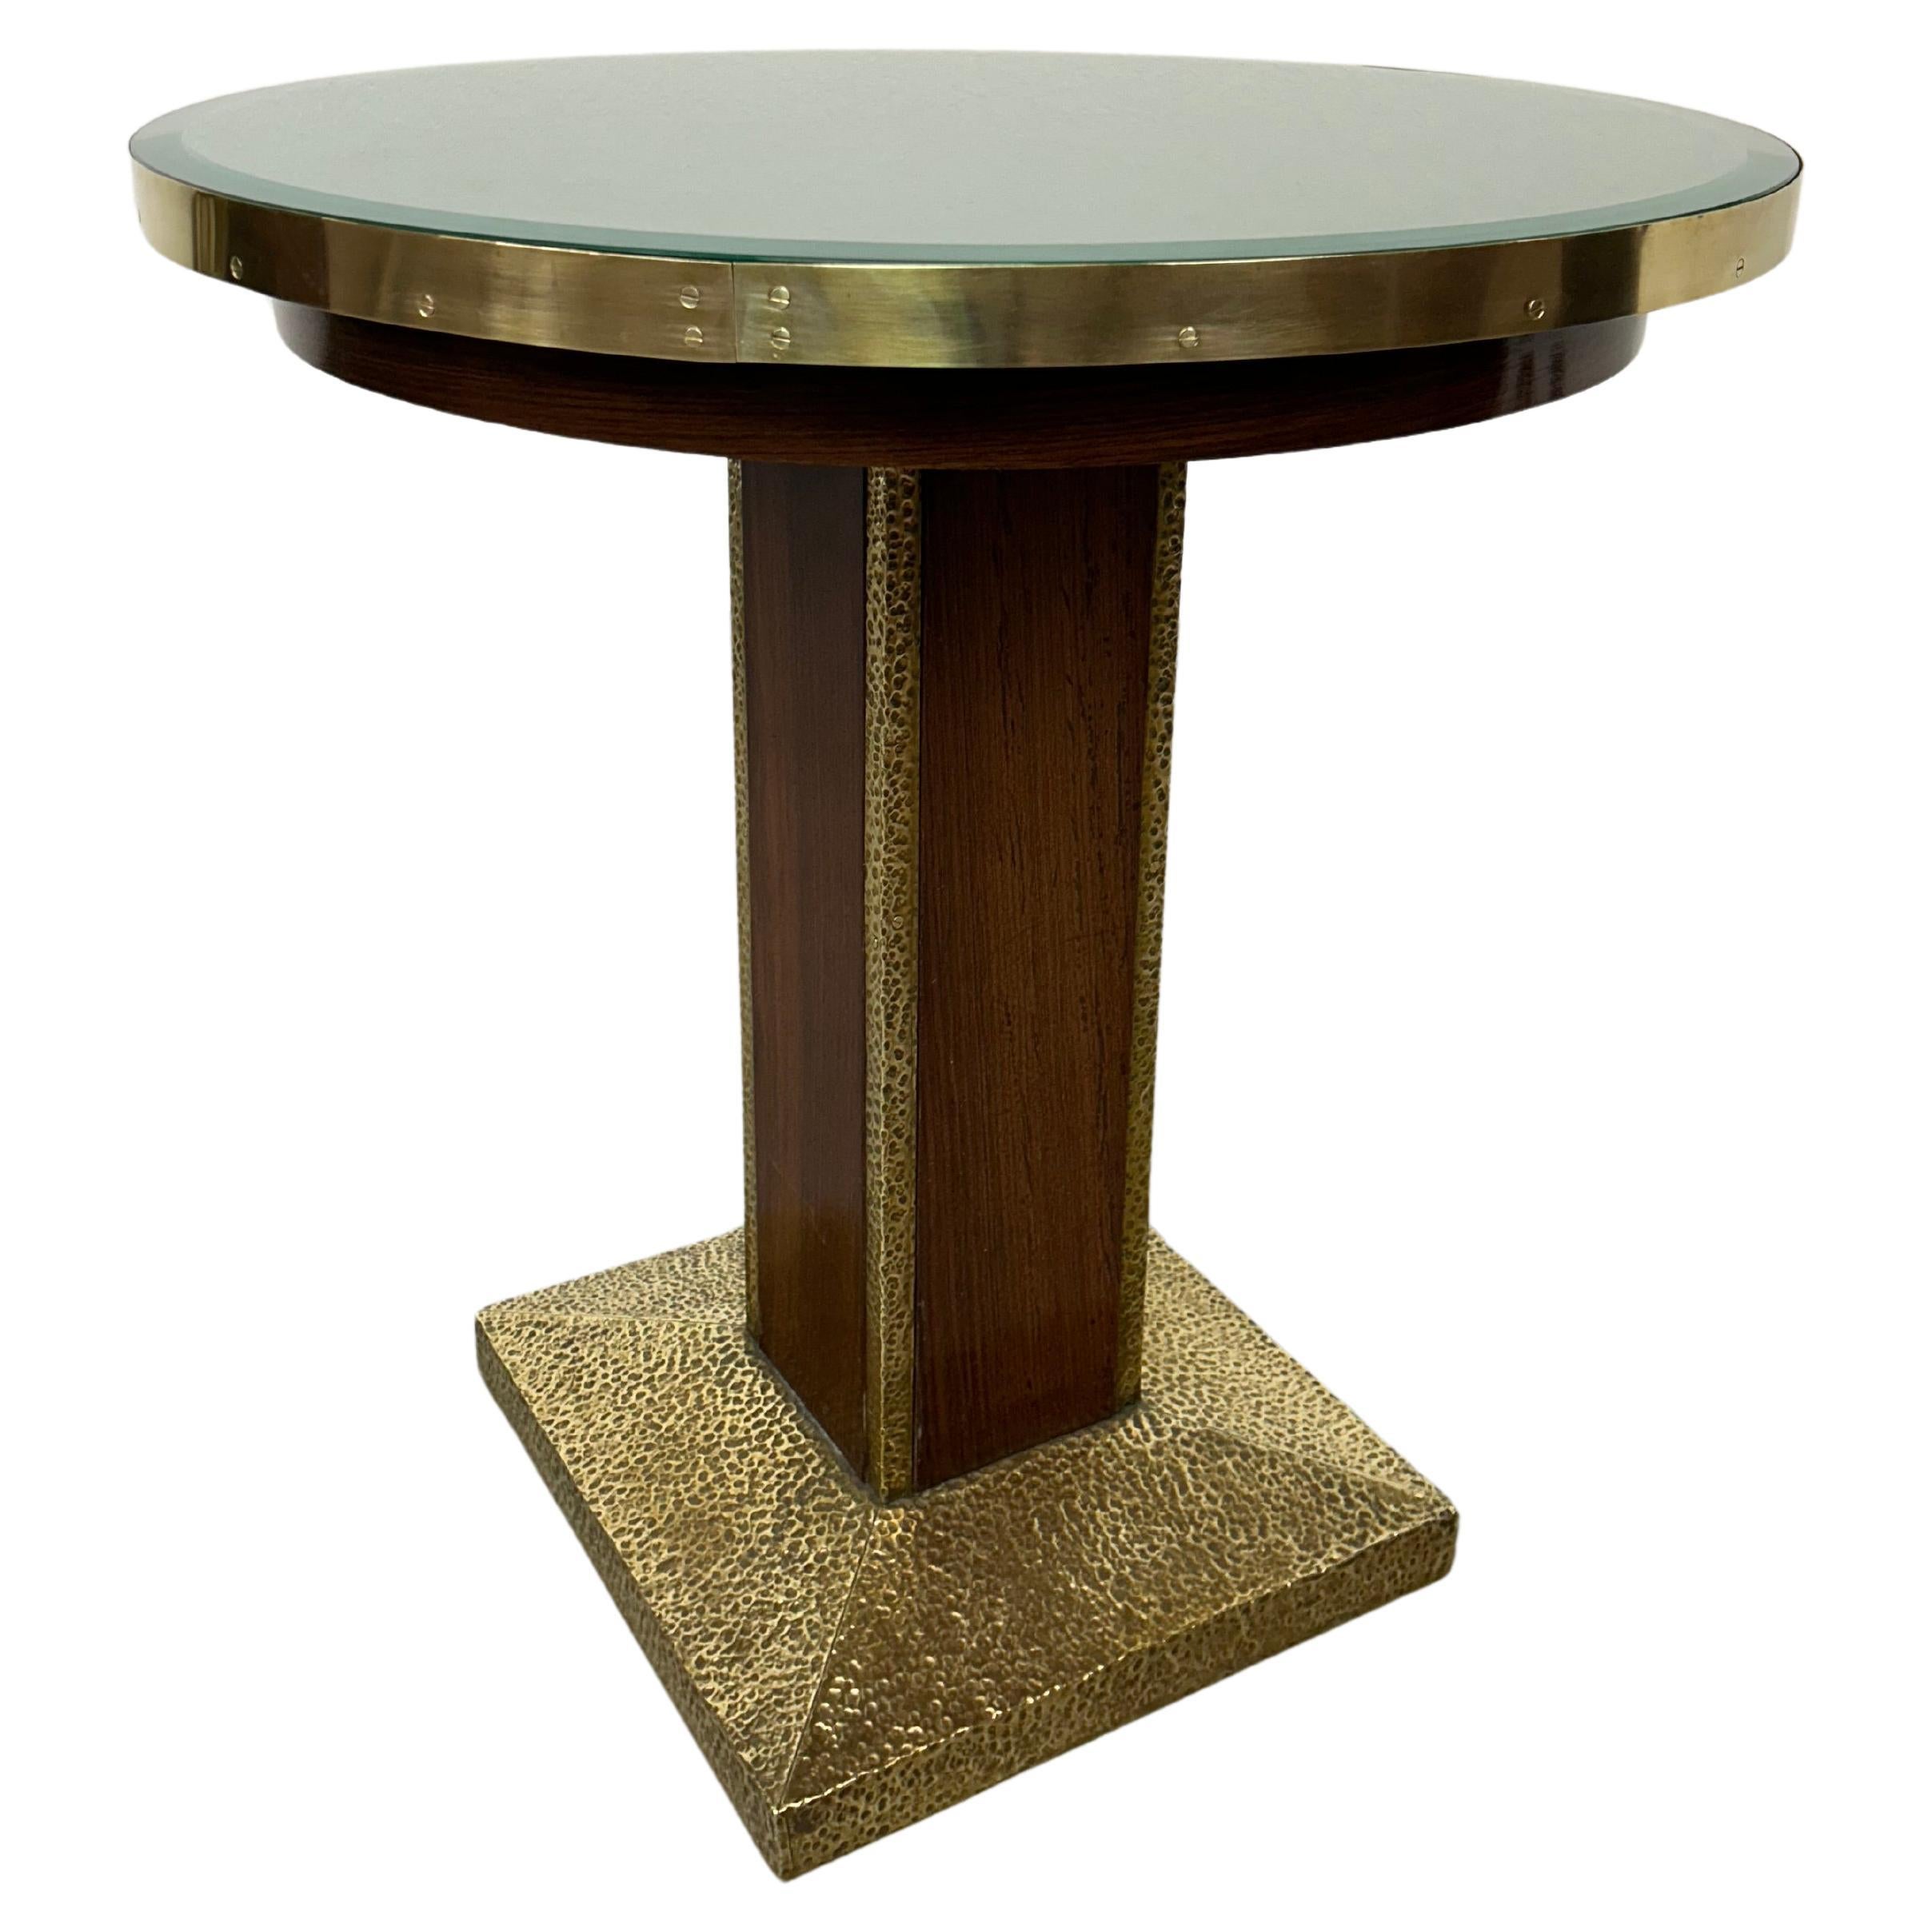 Jugendstil coffee table with hammered decor For Sale